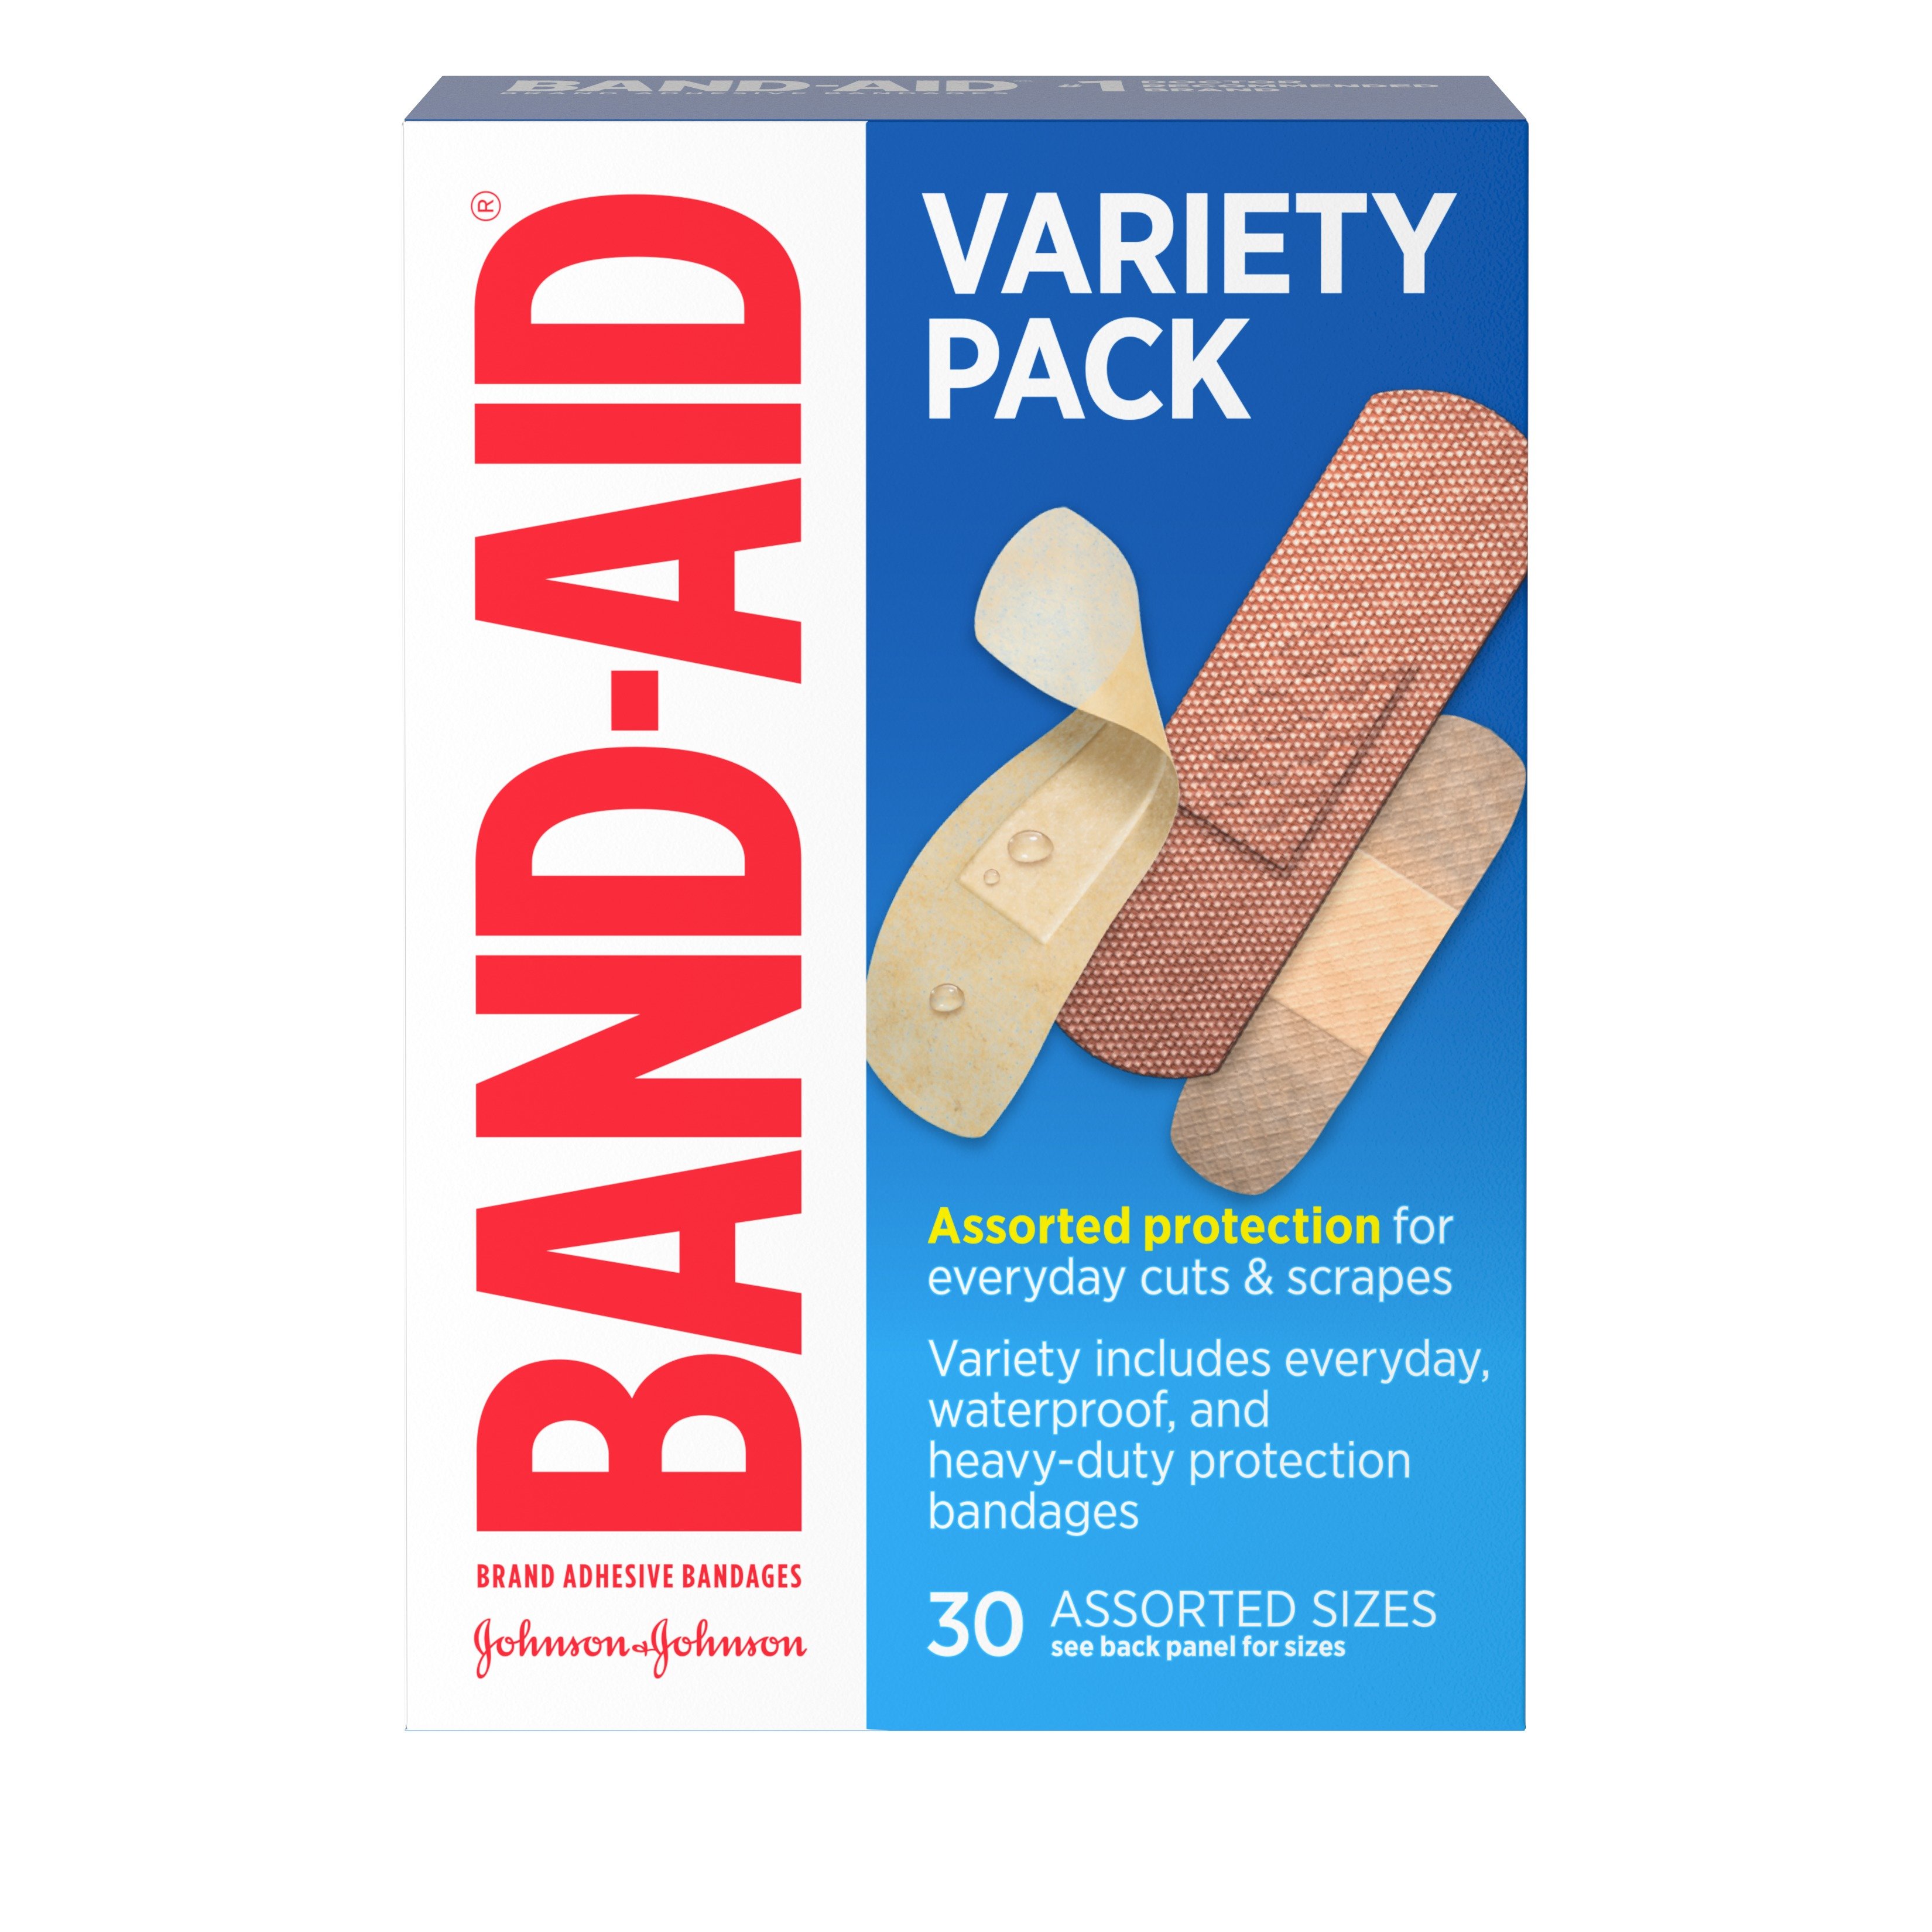 Band Aid Tape, Waterproof, Heavy Duty